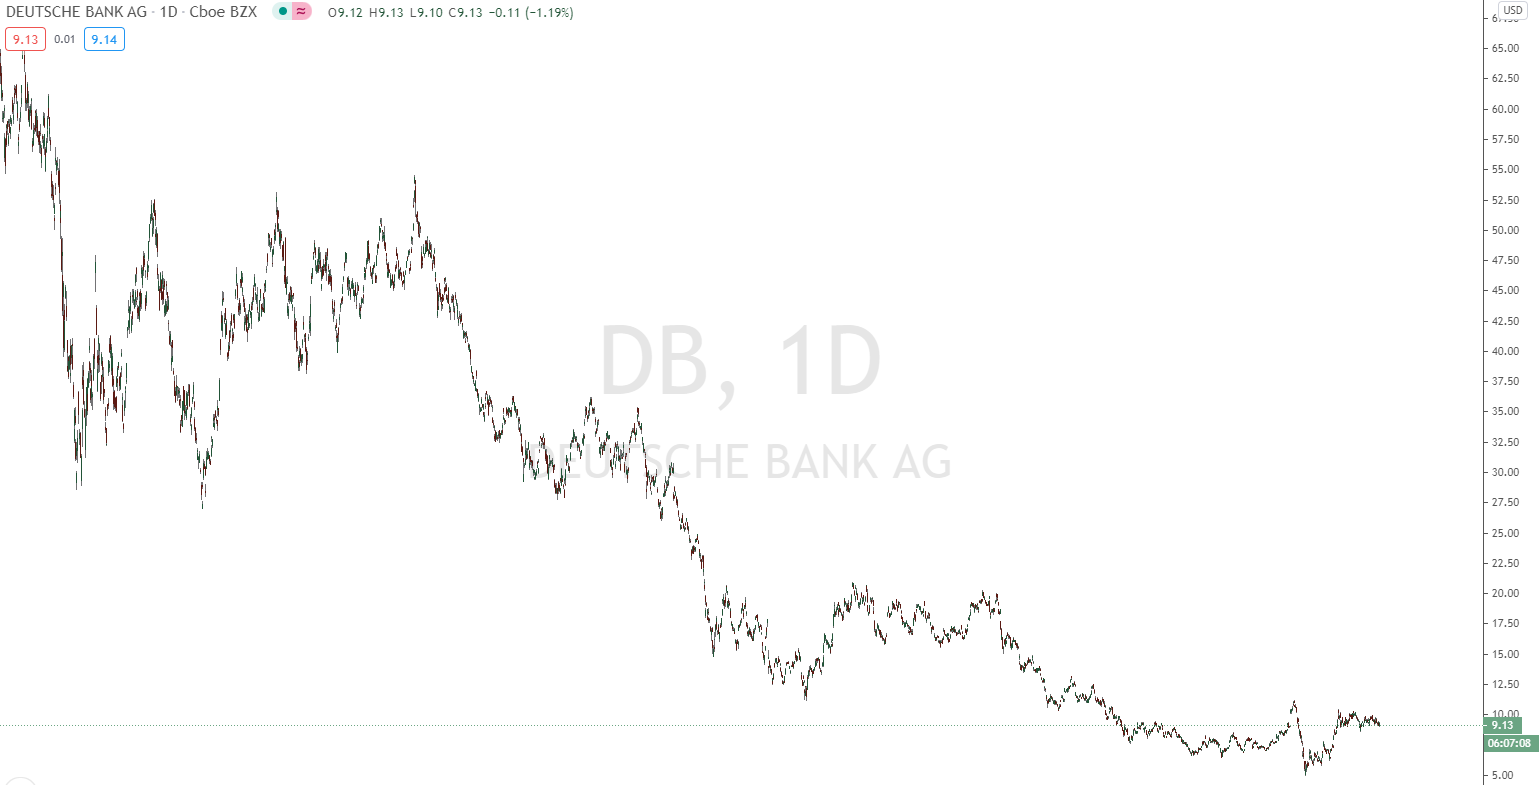 Deutsche Bank Aktie mit einem niedrigen Preis - unterbewertet?